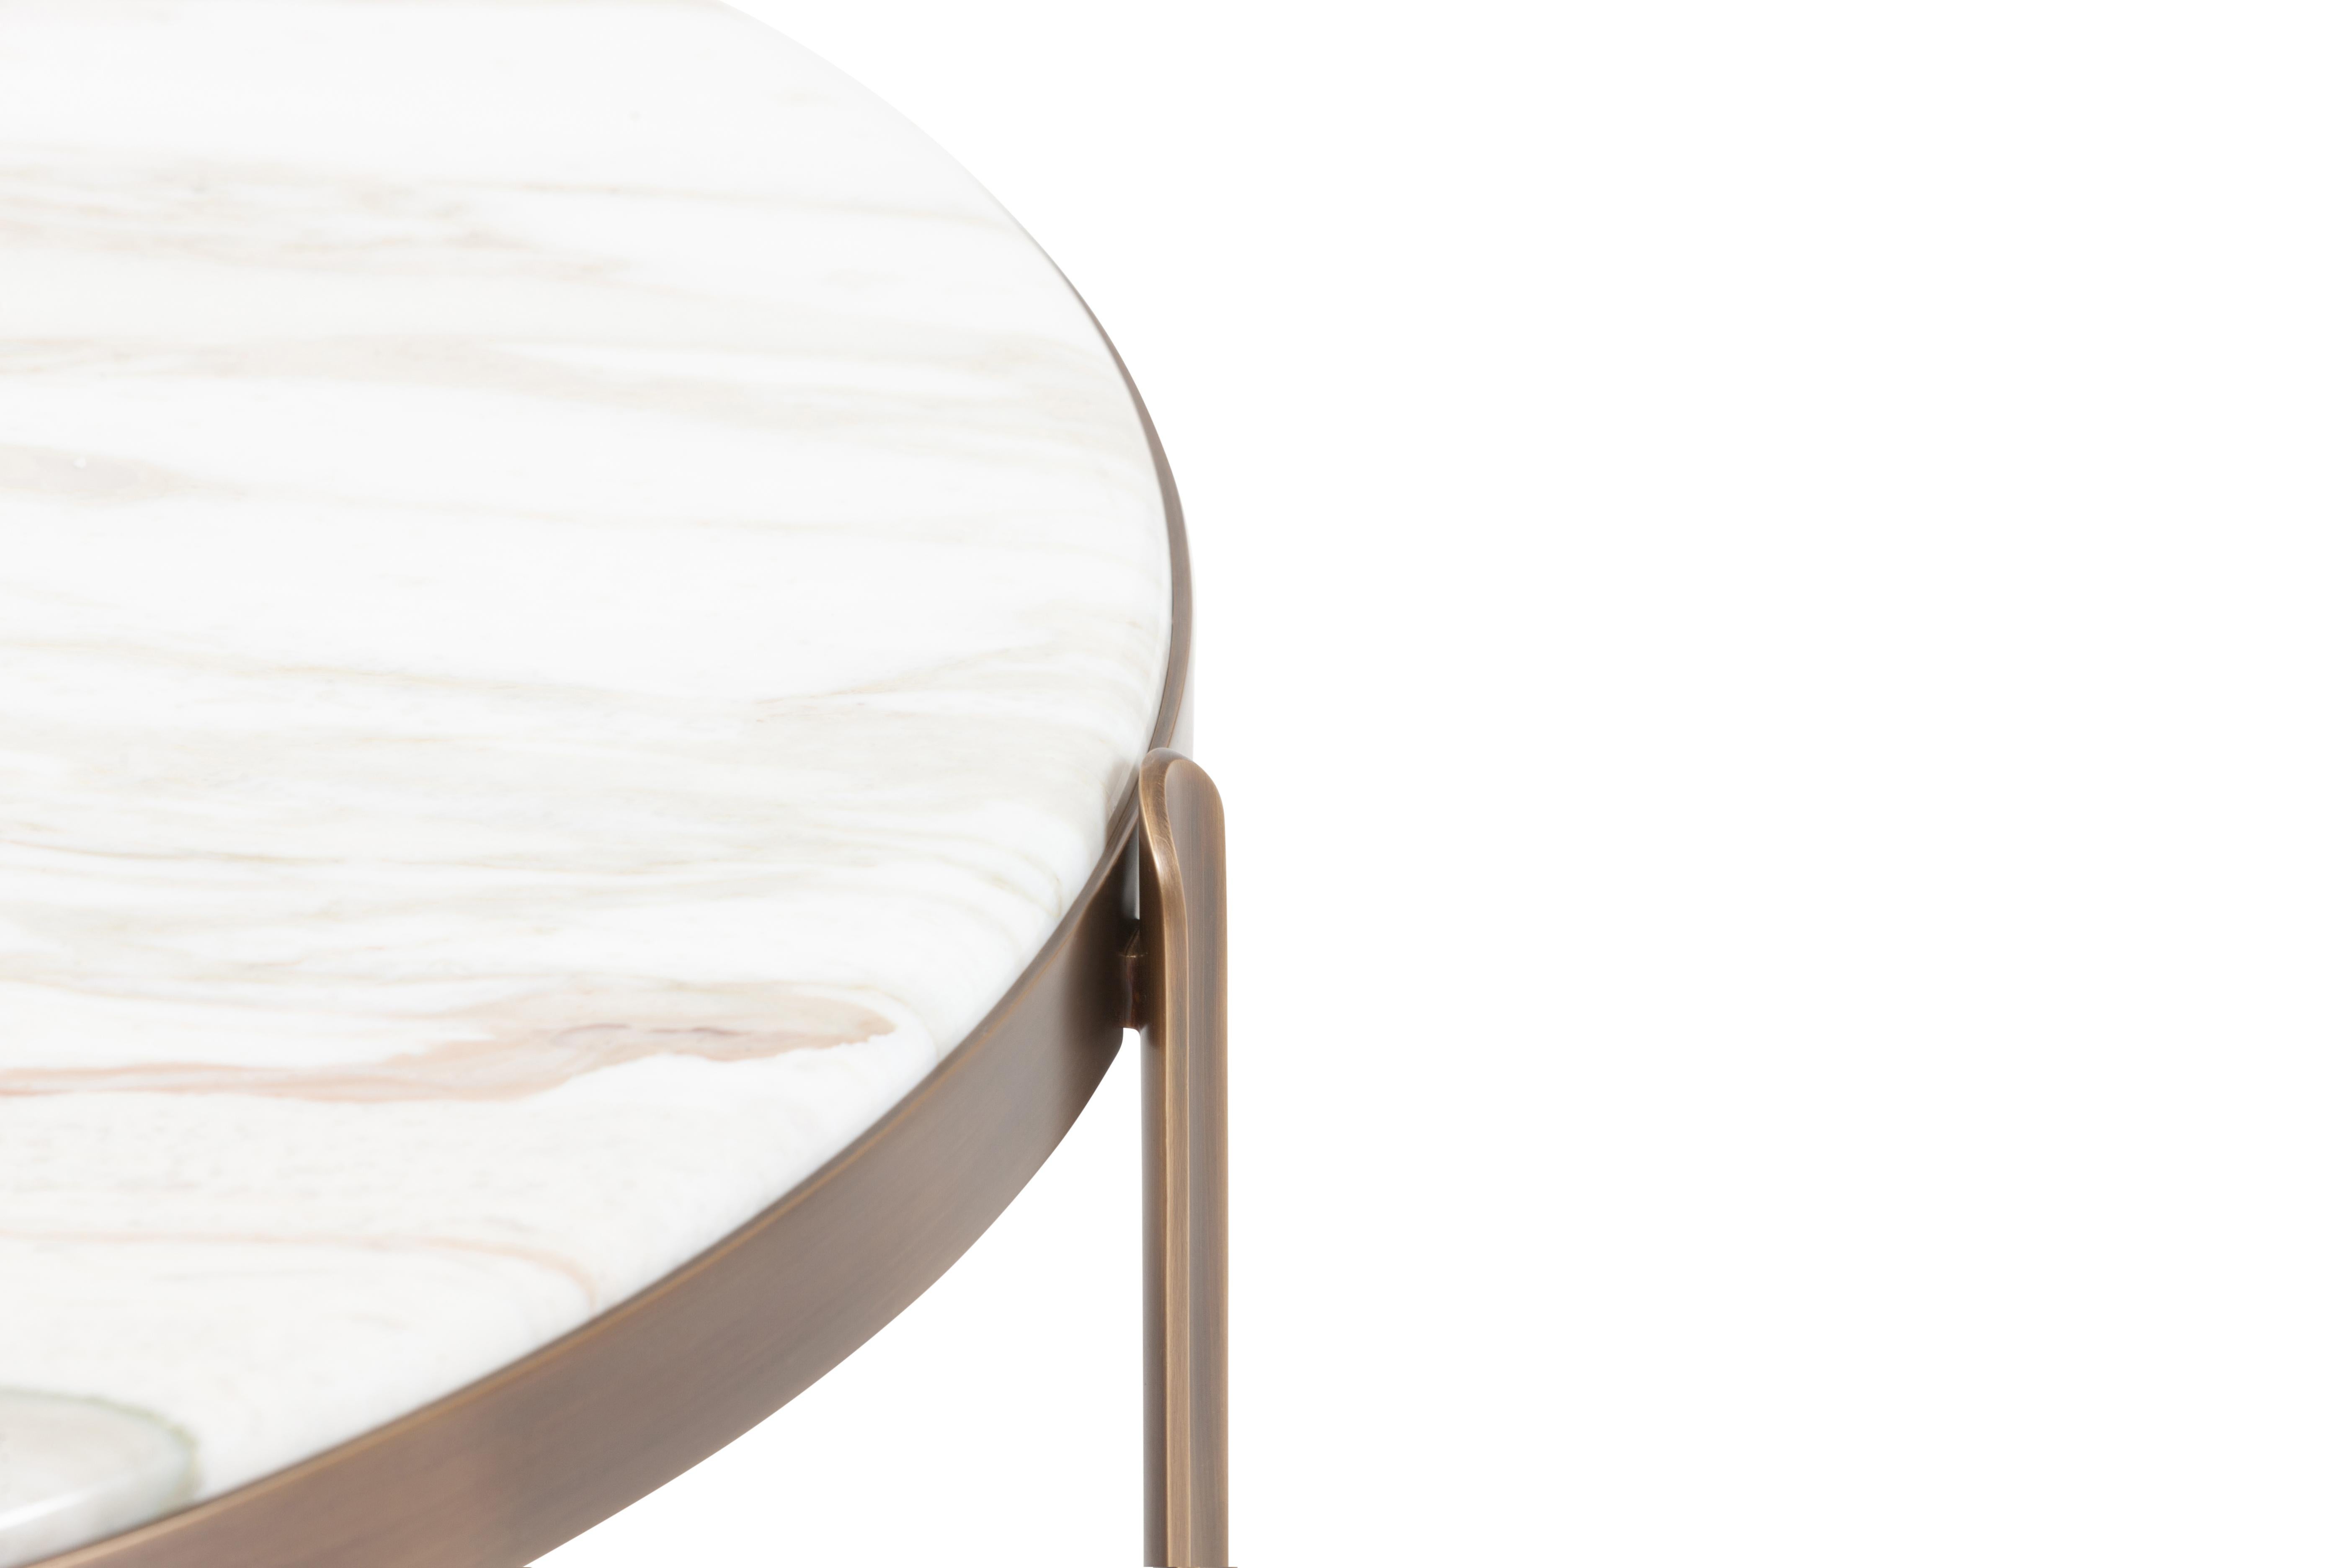 21. Jahrhundert Art Deco Elie Saab Maison Calacatta Bronze M Couchtisch, Italien

Die Zenith-Tische und -Konsolen, die nach ihrer strategischen Position in der Inneneinrichtung benannt sind, verleihen jedem Raum einen raffinierten und